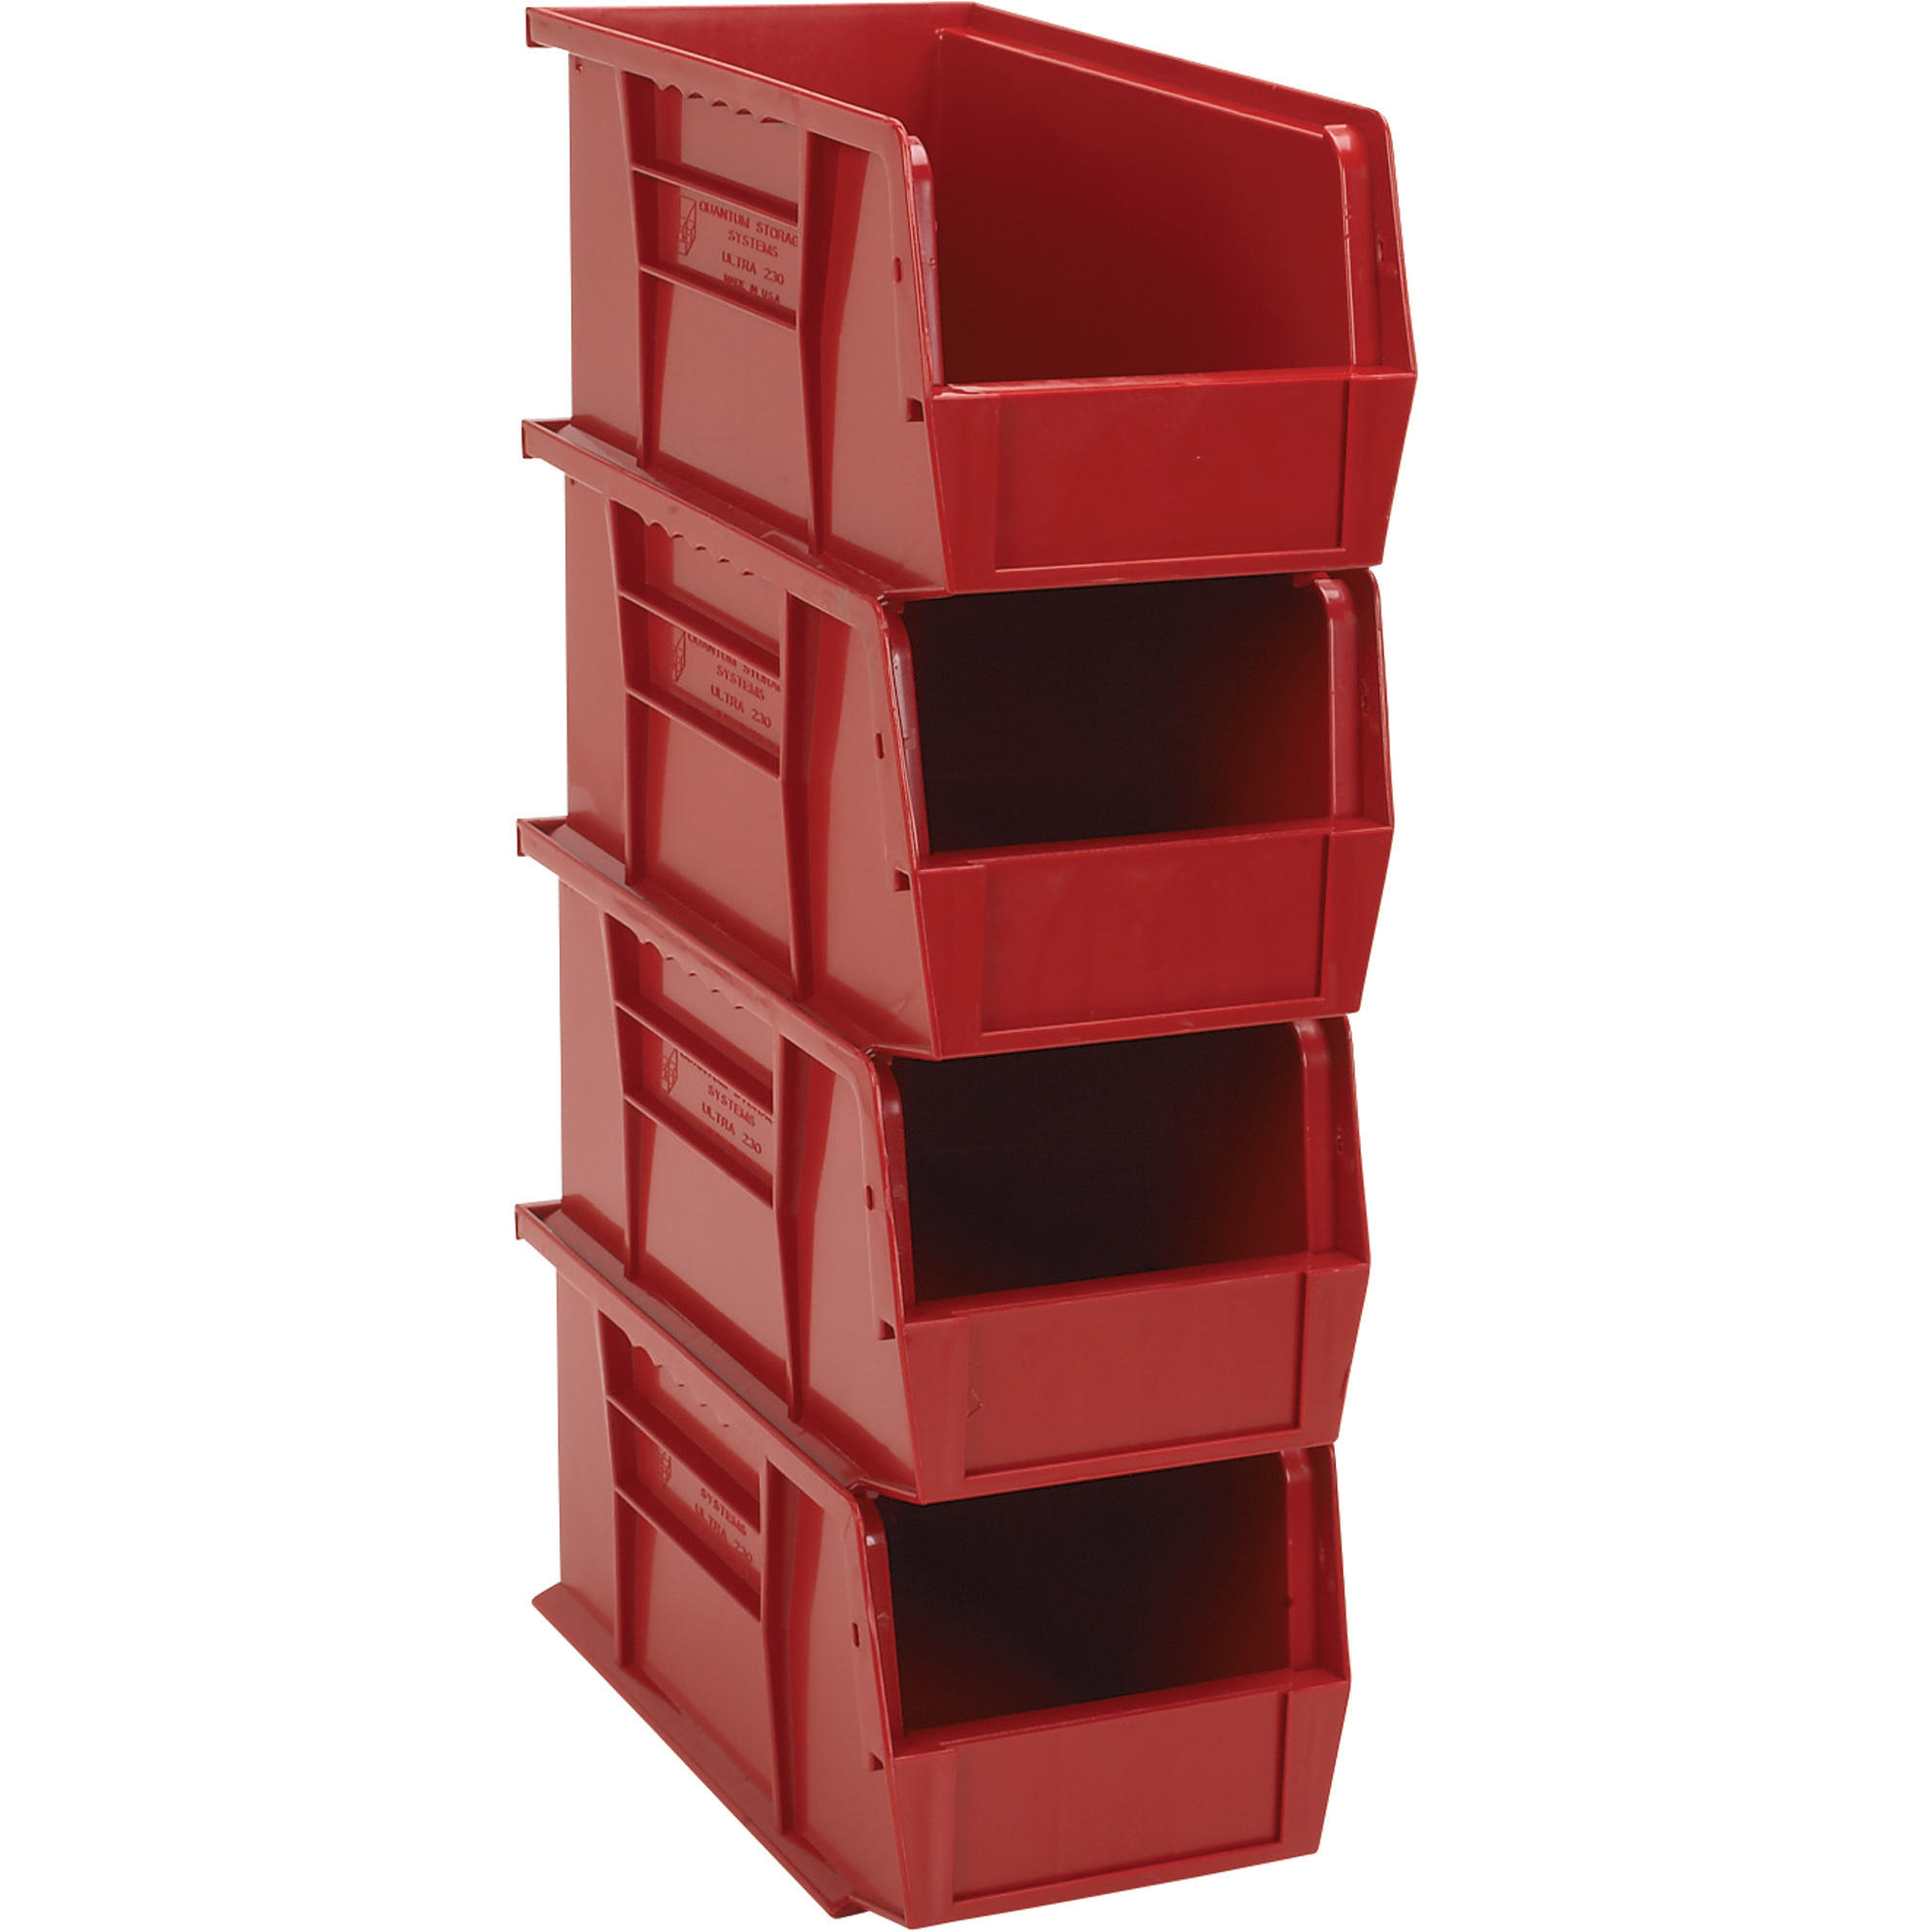 Quantum Heavy-Duty Storage Bins, 4-Pack, Red, 10 7/8Inch L x 5 1/2Inch W x 5Inch H Bin Size, Model NTE-RQUS230RD